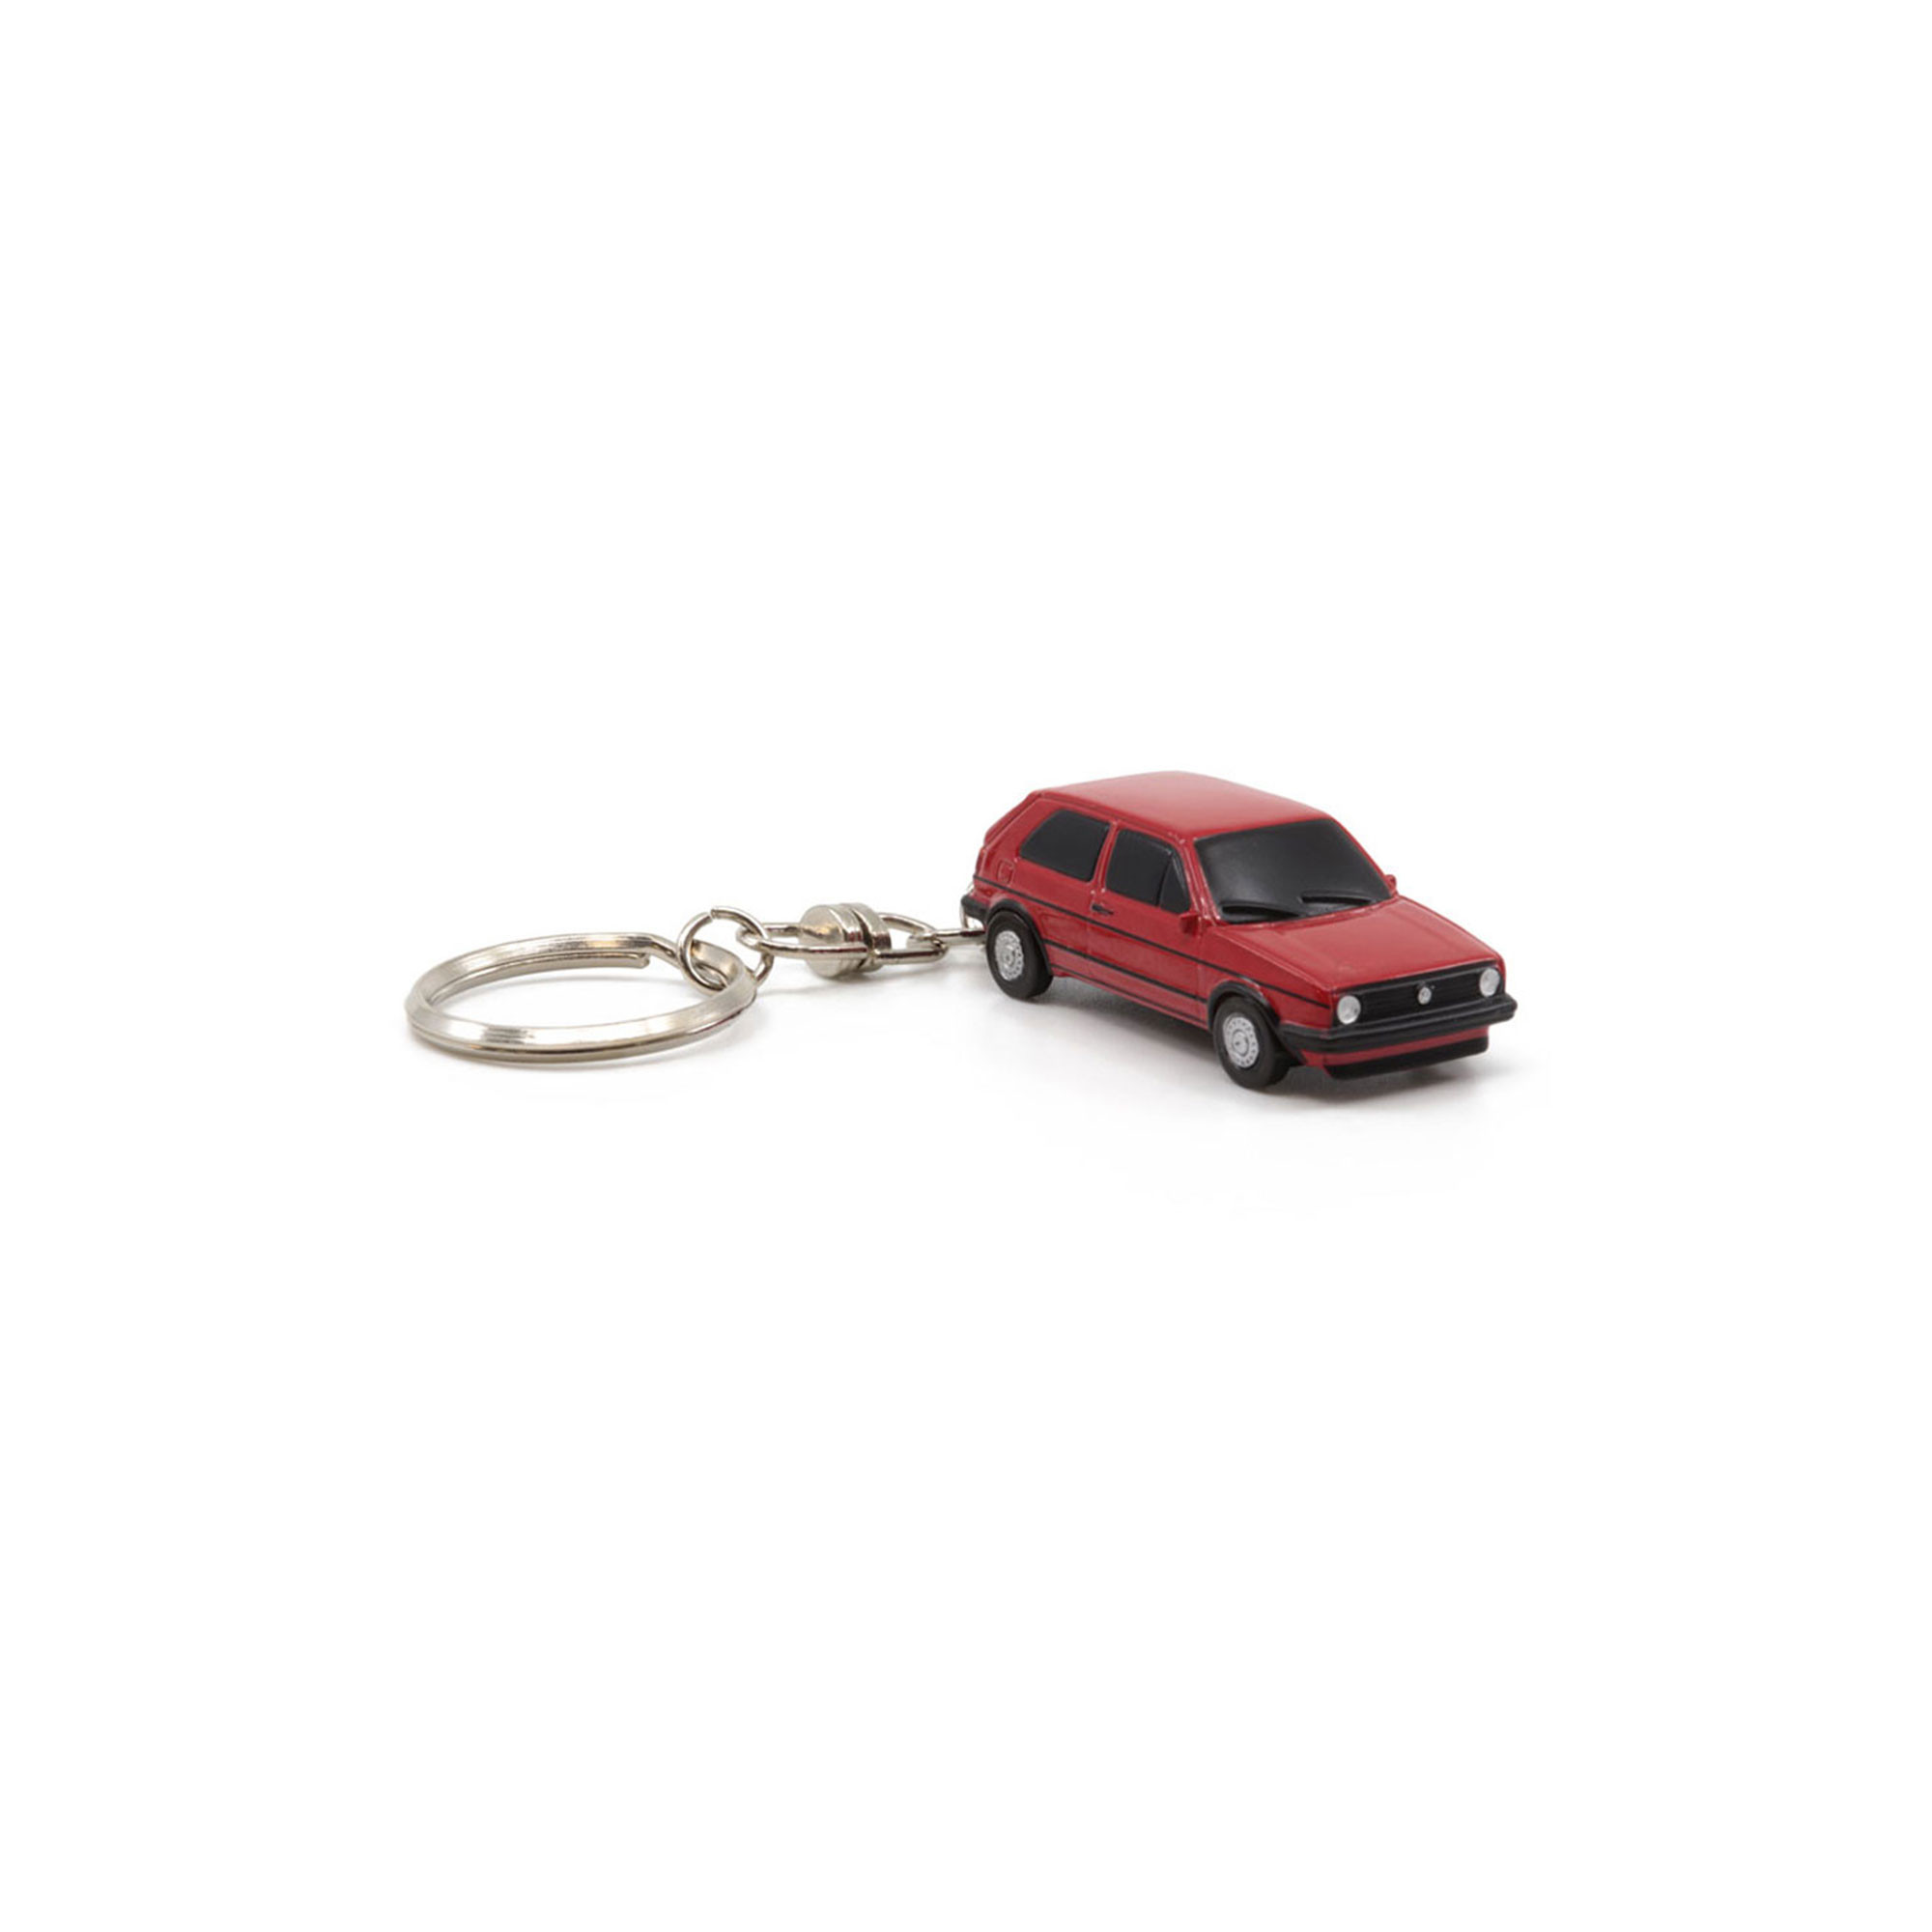 VW Golf 2 GTI Rot 1:87 Schlüsselanhänger Keyring ZMD002031 Key